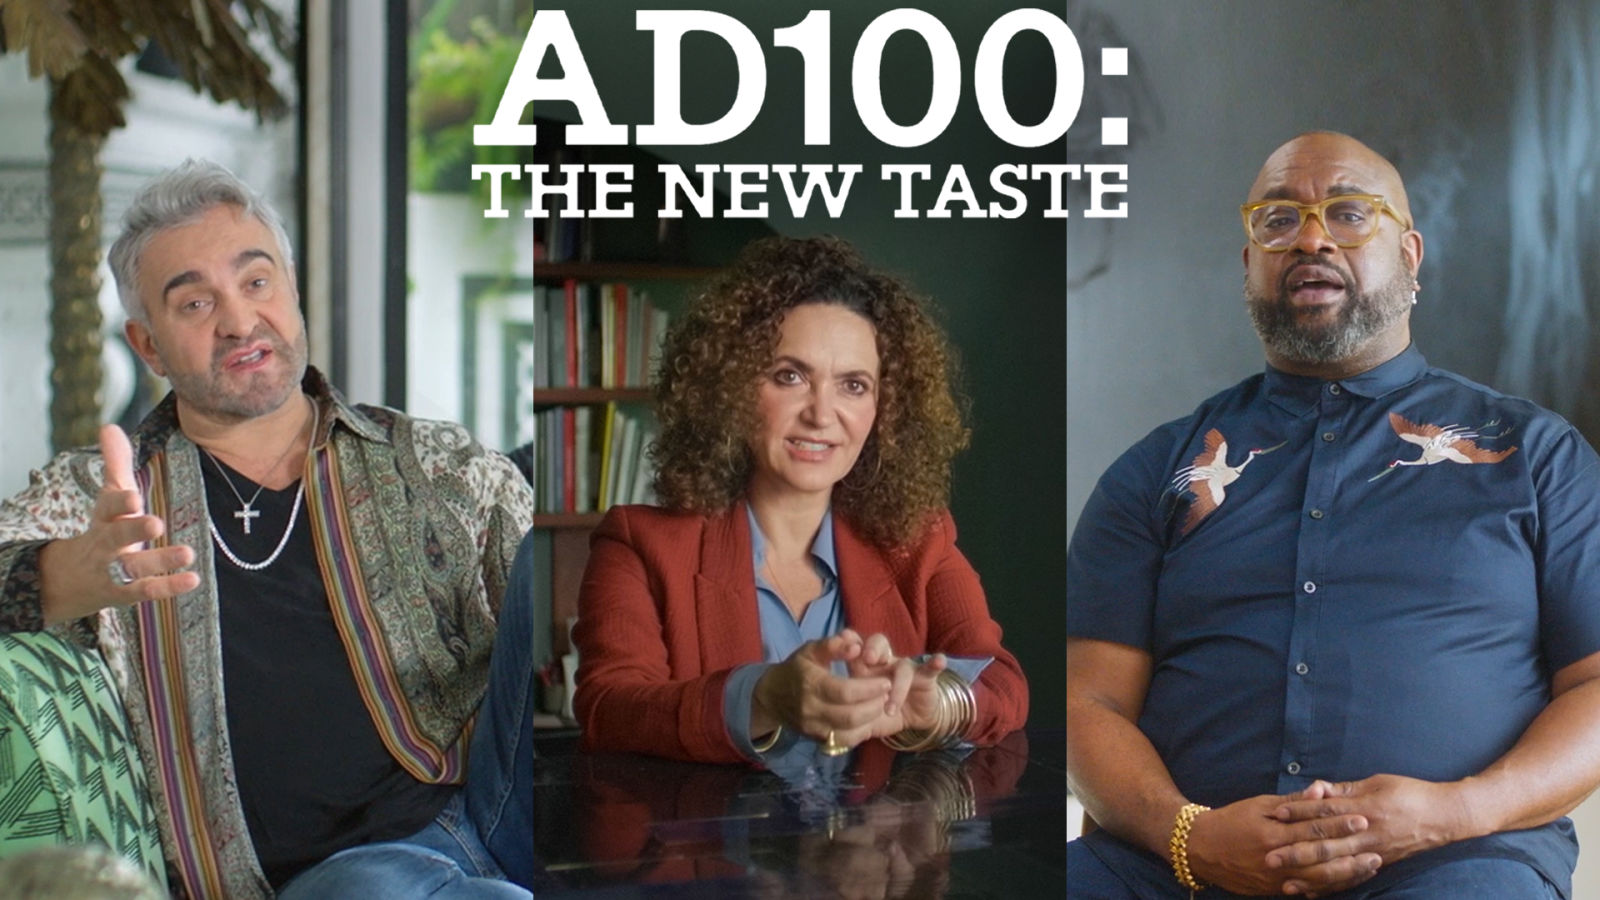 AD100: The New Taste